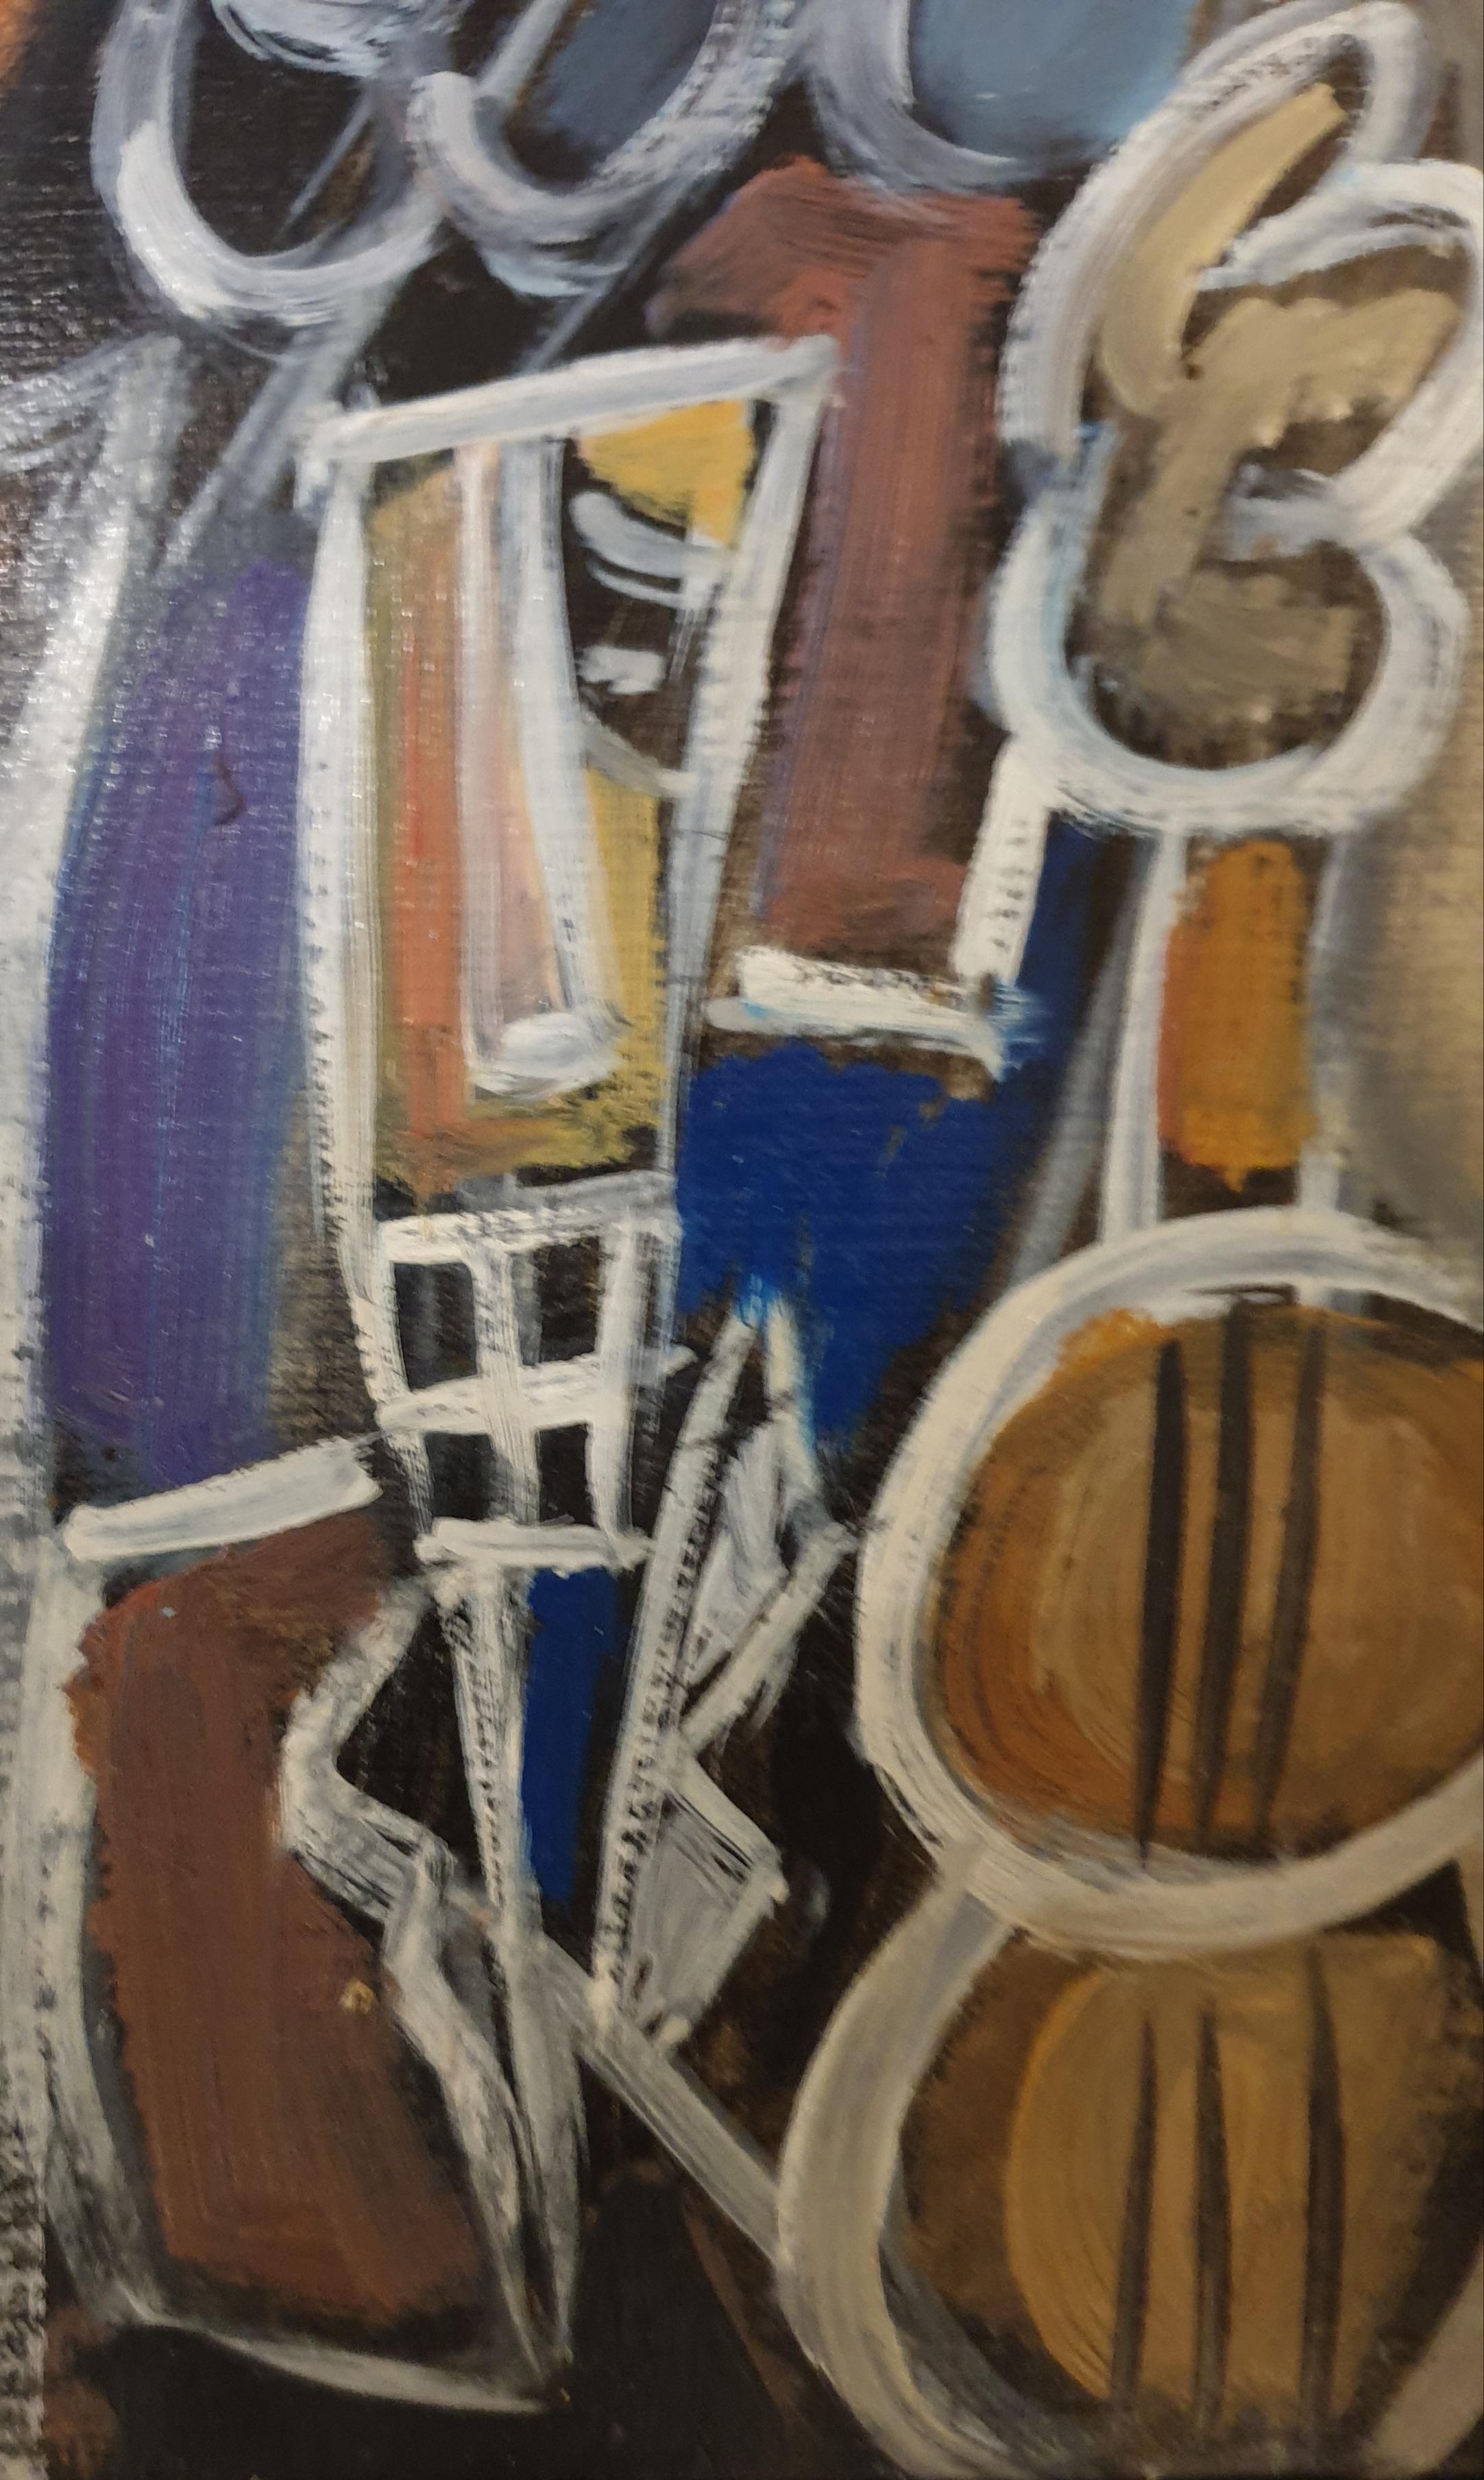 Abstraktes expressionistisches Ölgemälde des französischen Künstlers Thierry Miramon aus dem späten 20. Jahrhundert, das eine lebhafte Jazznacht darstellt, oben links signiert und in einem zeitgenössischen schwarzen Rahmen präsentiert. 

Ein